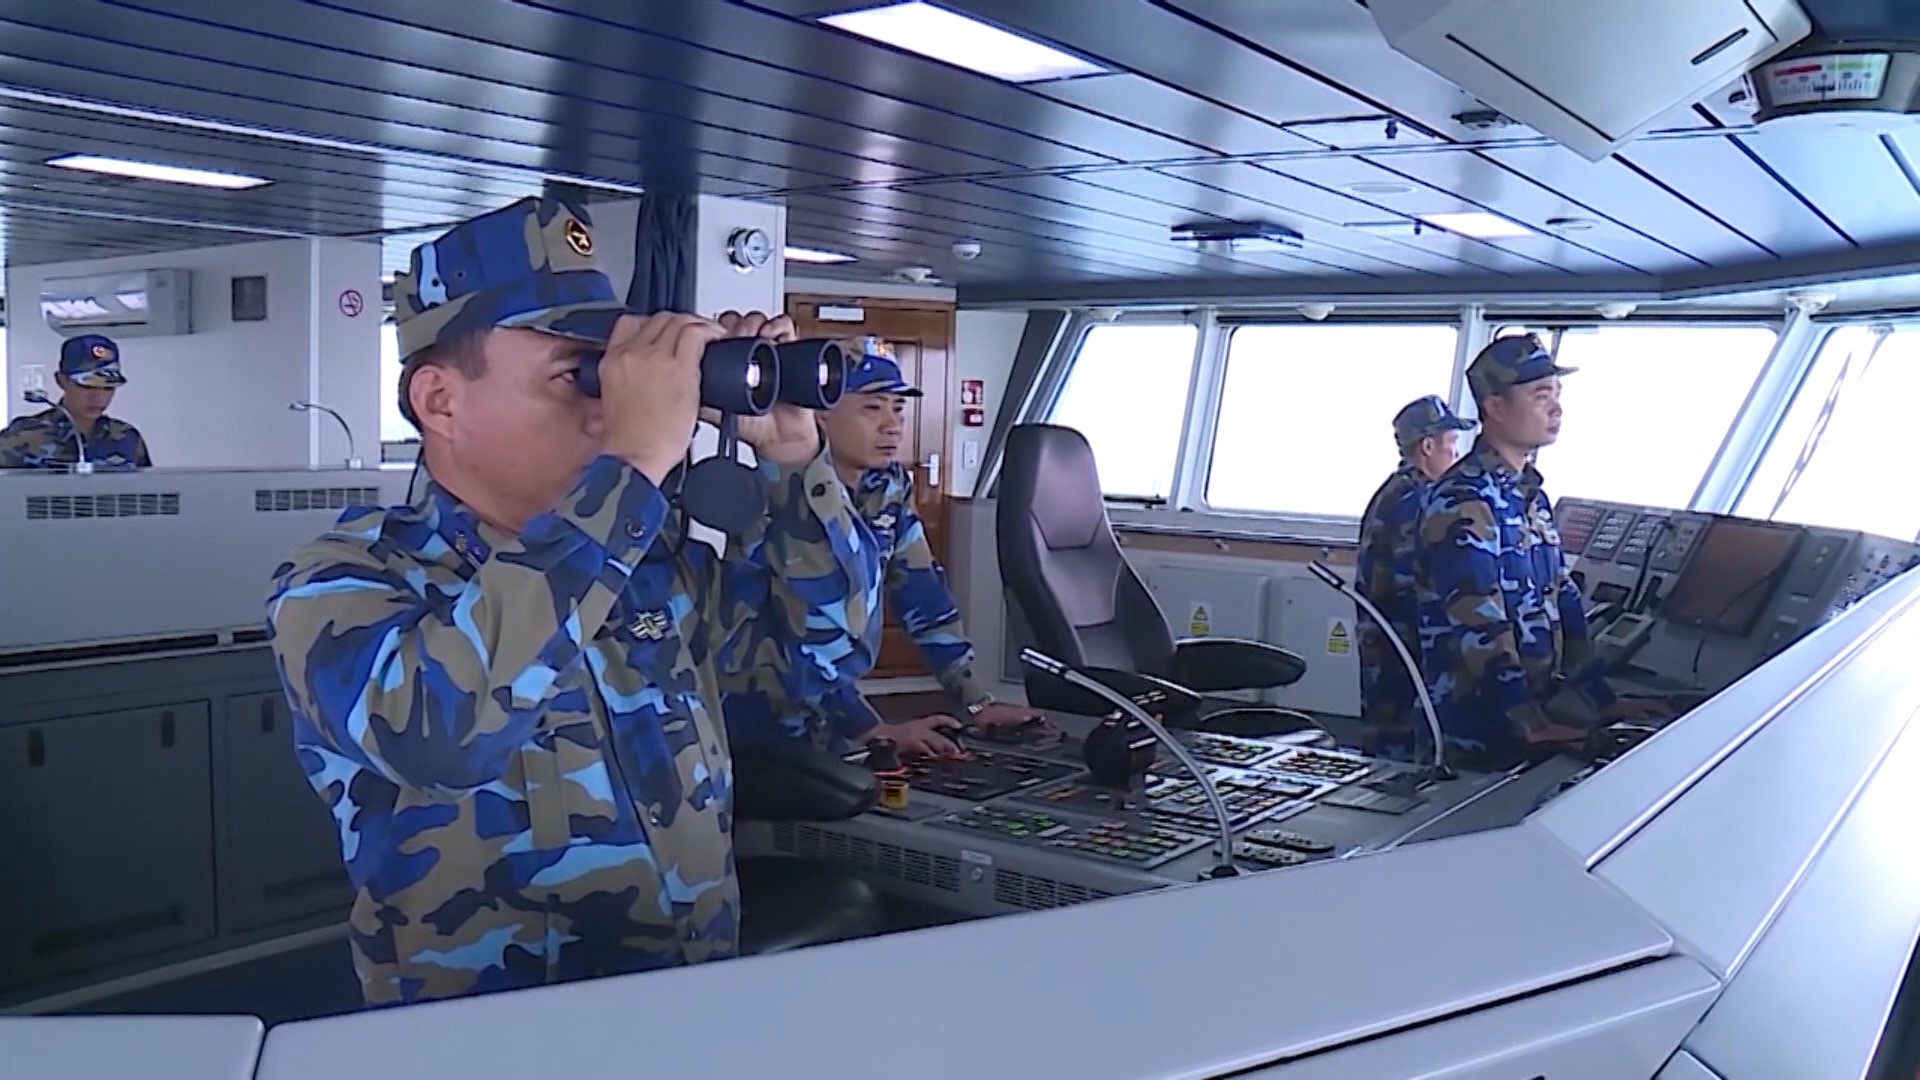 Bộ Tư lệnh Vùng cảnh sát biển 2 cũng tăng cường công tác trinh sát, nắm bắt tình hình trên tất cả các hướng. Ảnh: HOÀI AN